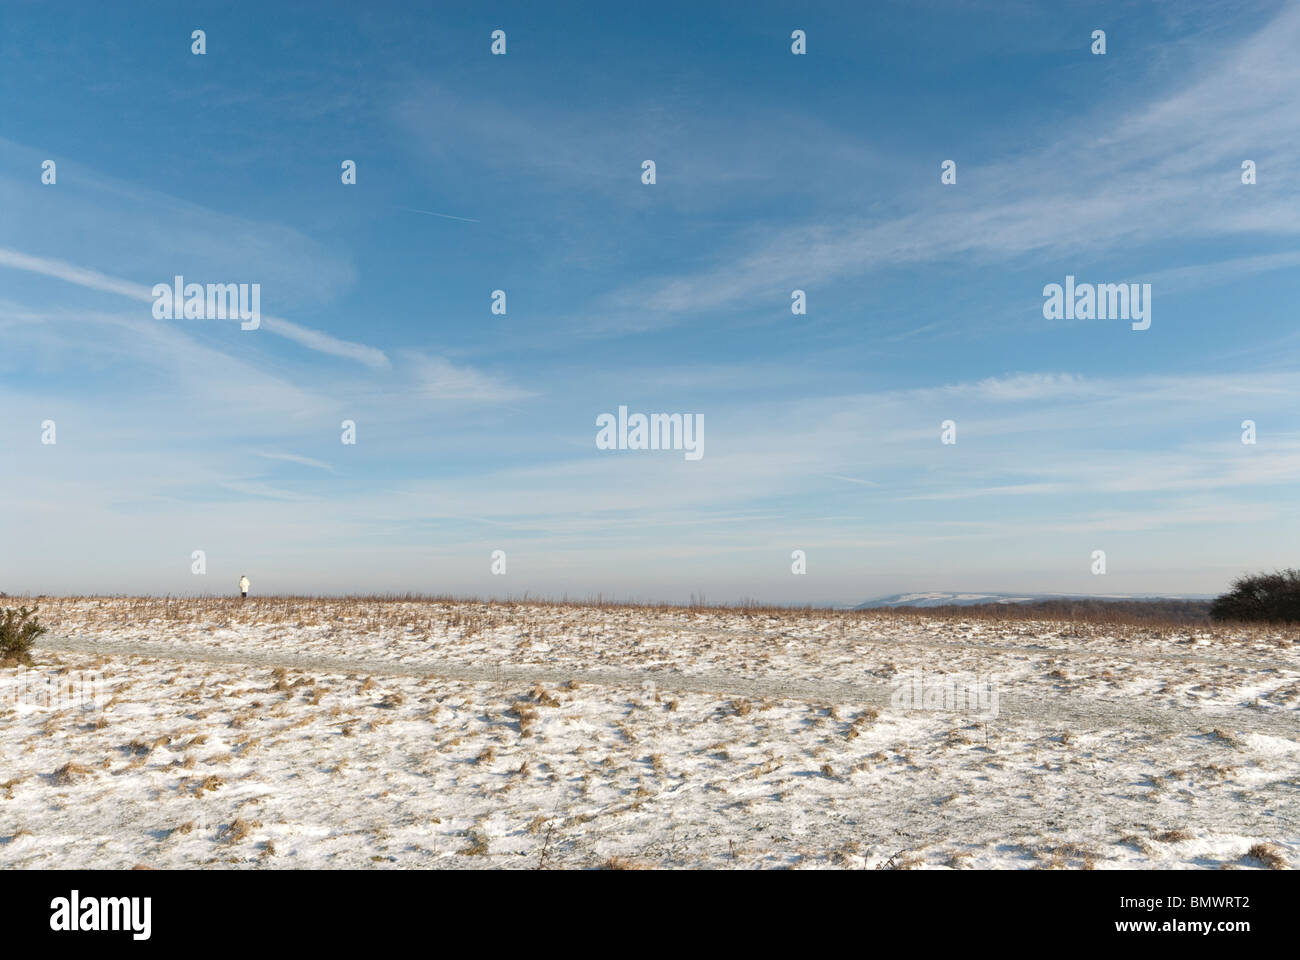 einsame Figur am Hang mit leichten Abdeckung des Schnees und Weitblick der näheren Umgebung Stockfoto